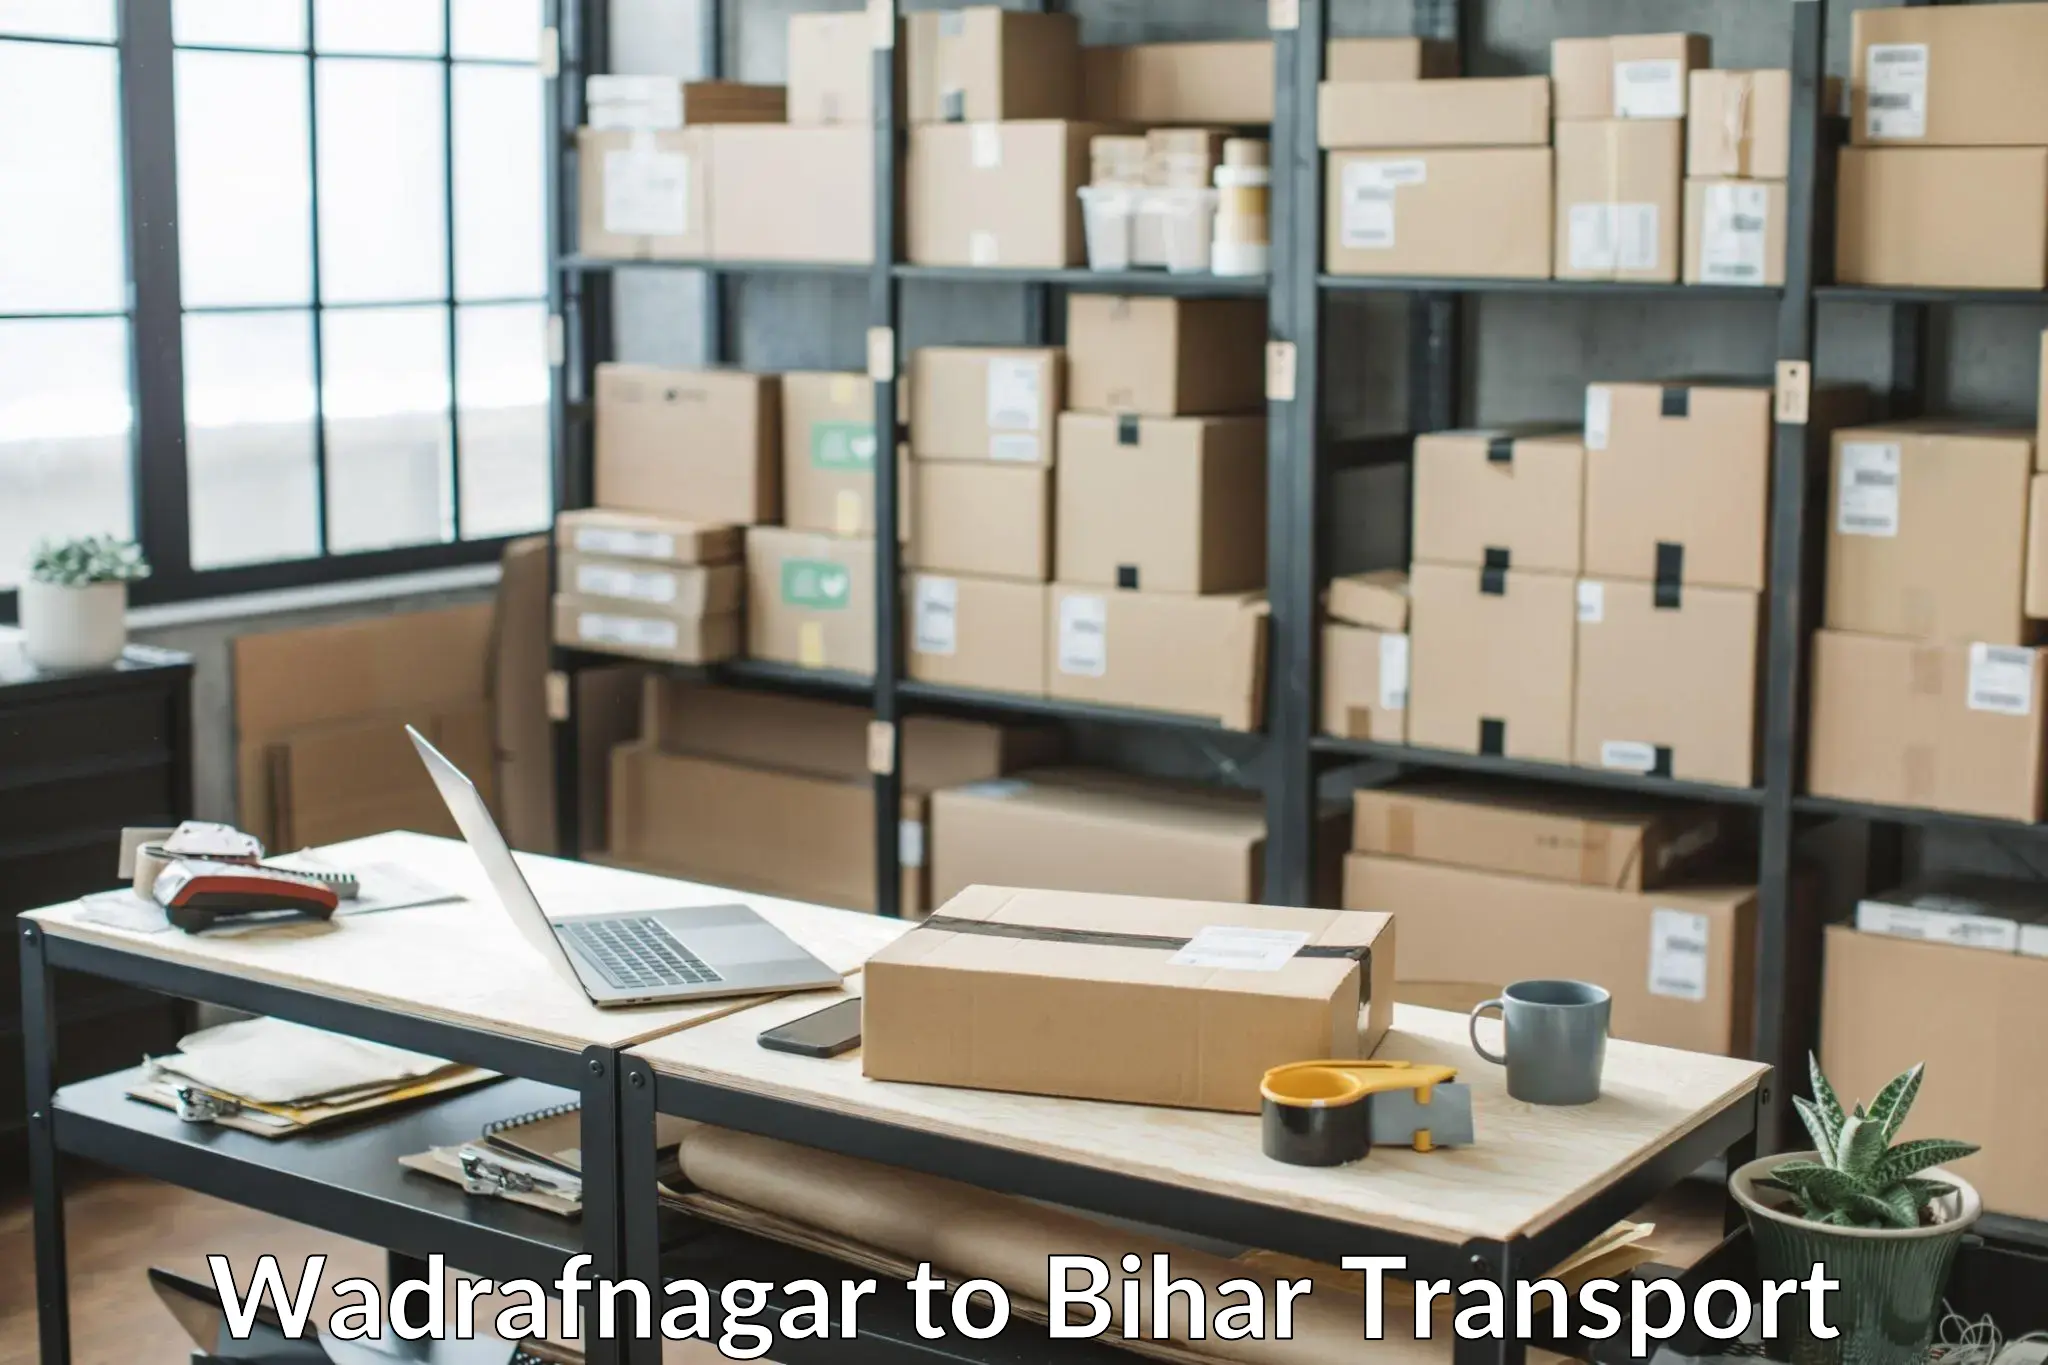 Road transport services Wadrafnagar to Bihar